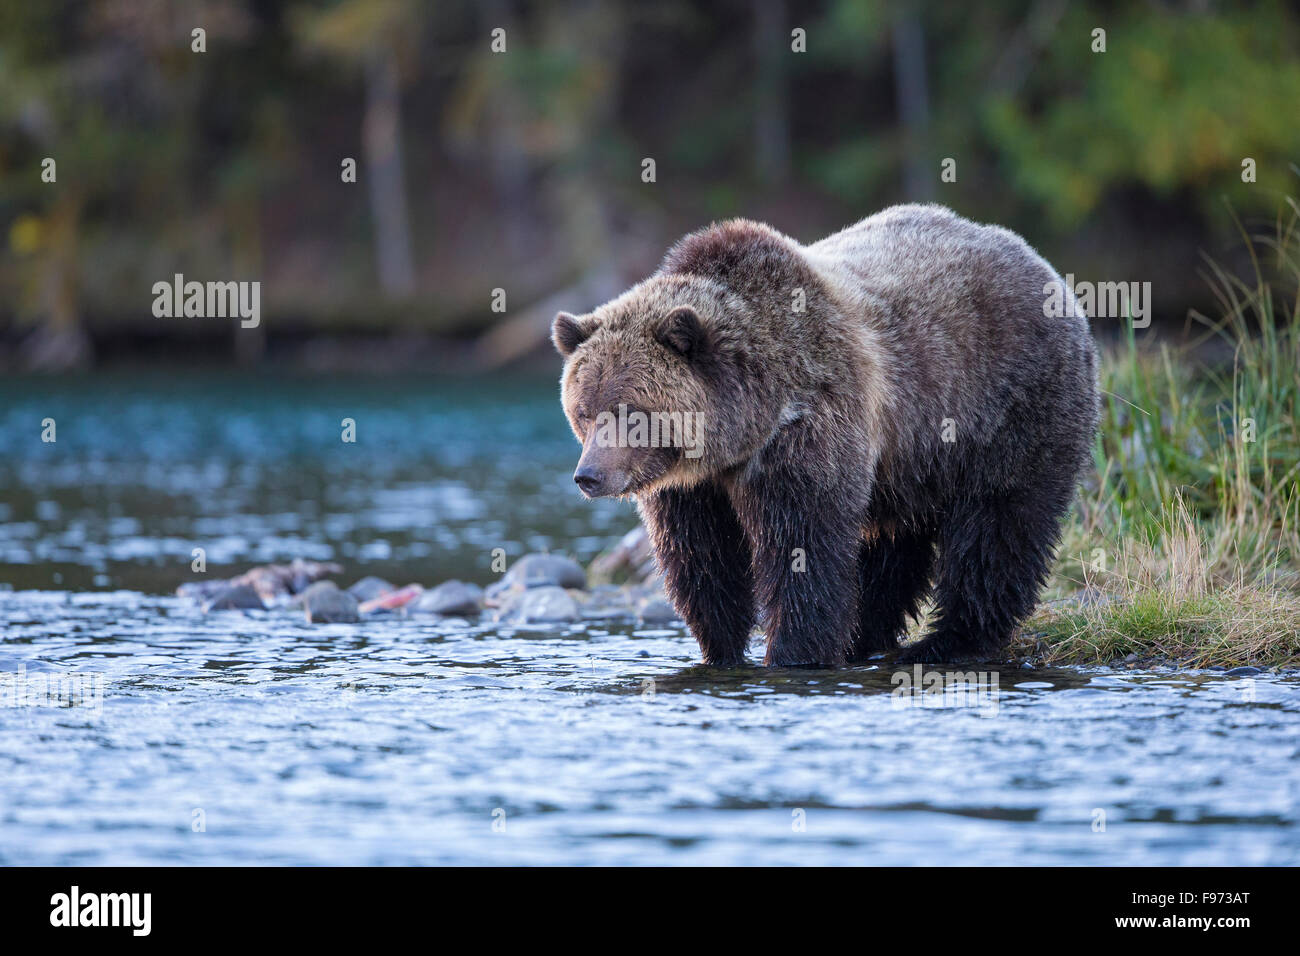 Grizzly bear (Ursus arctos horribilis), Central Interior, British Columbia. Stock Photo